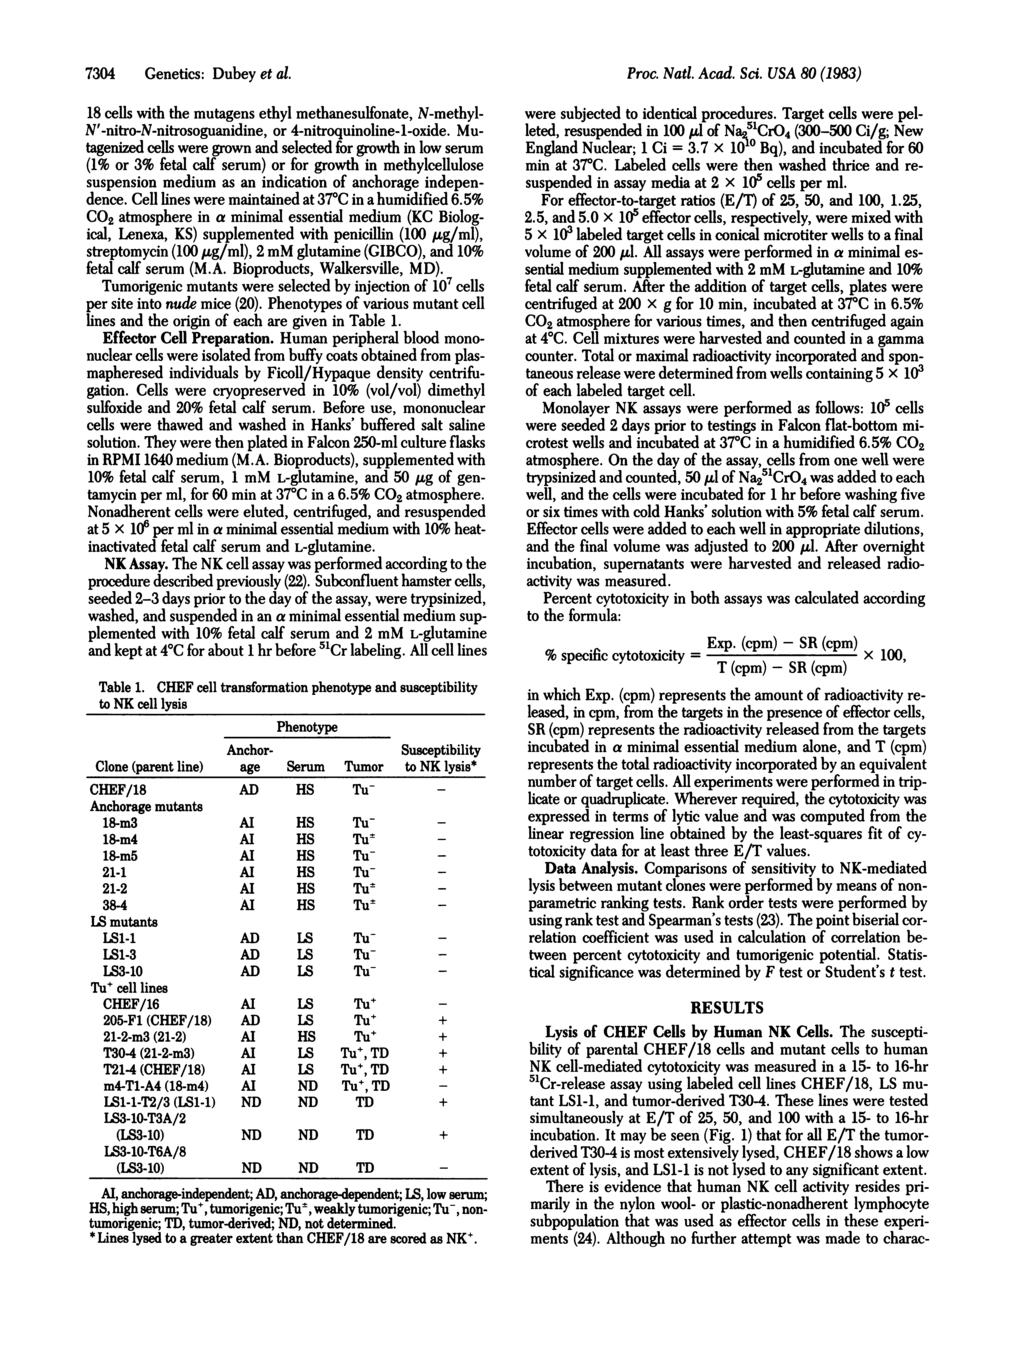 7304 Genetics: Dubey et al. 18 cells with the mutagens ethyl methanesulfonate, N-methyl- N'-nitro-N-nitrosoguanidine, or 4-nitroquinoline-1-oxide.